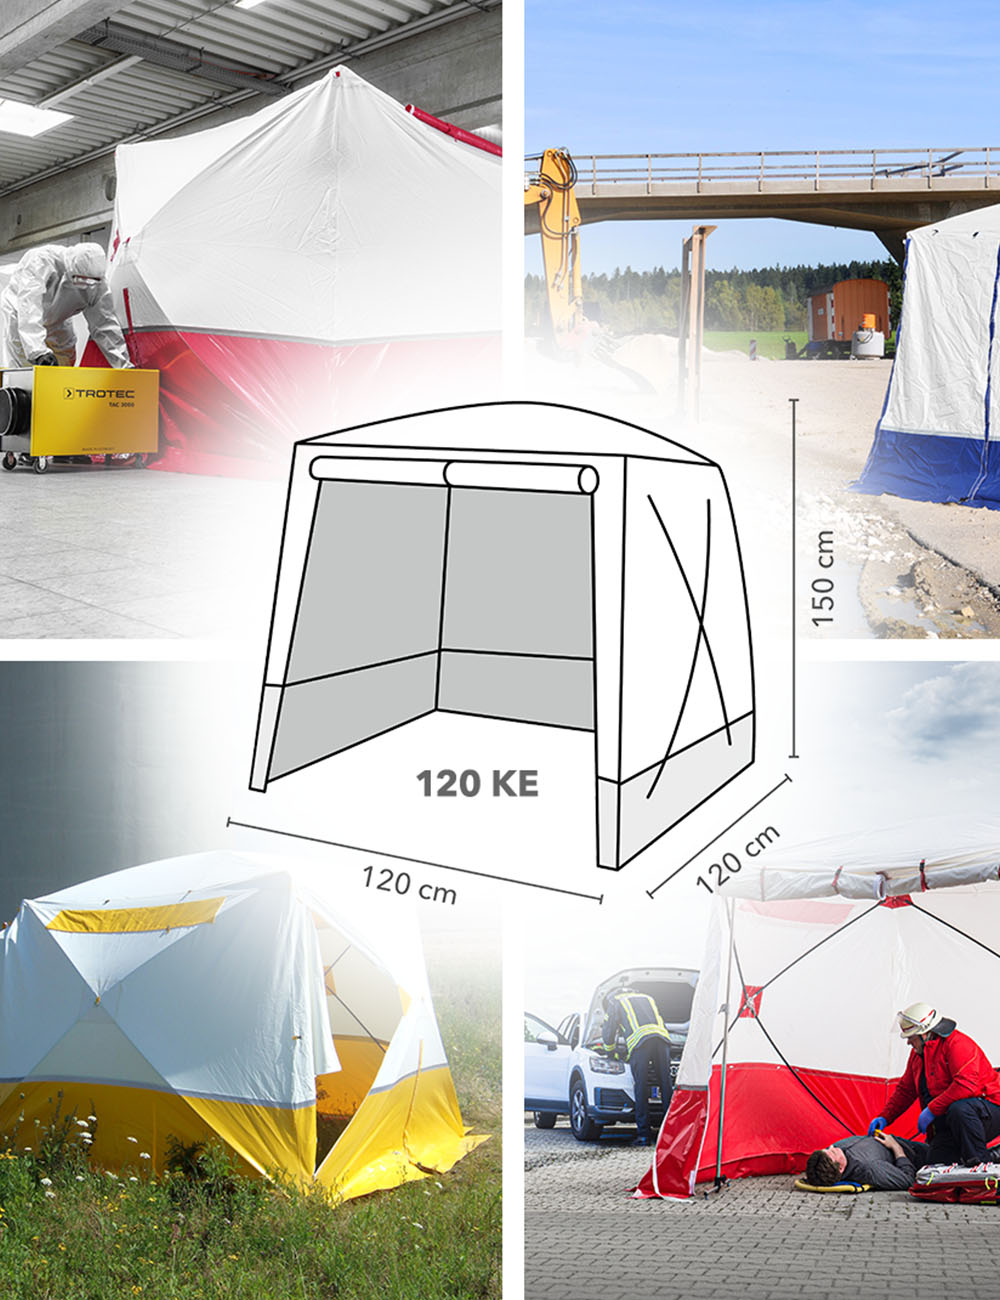 Tenda a tetto piano 120 KE - utilizzo versatile!